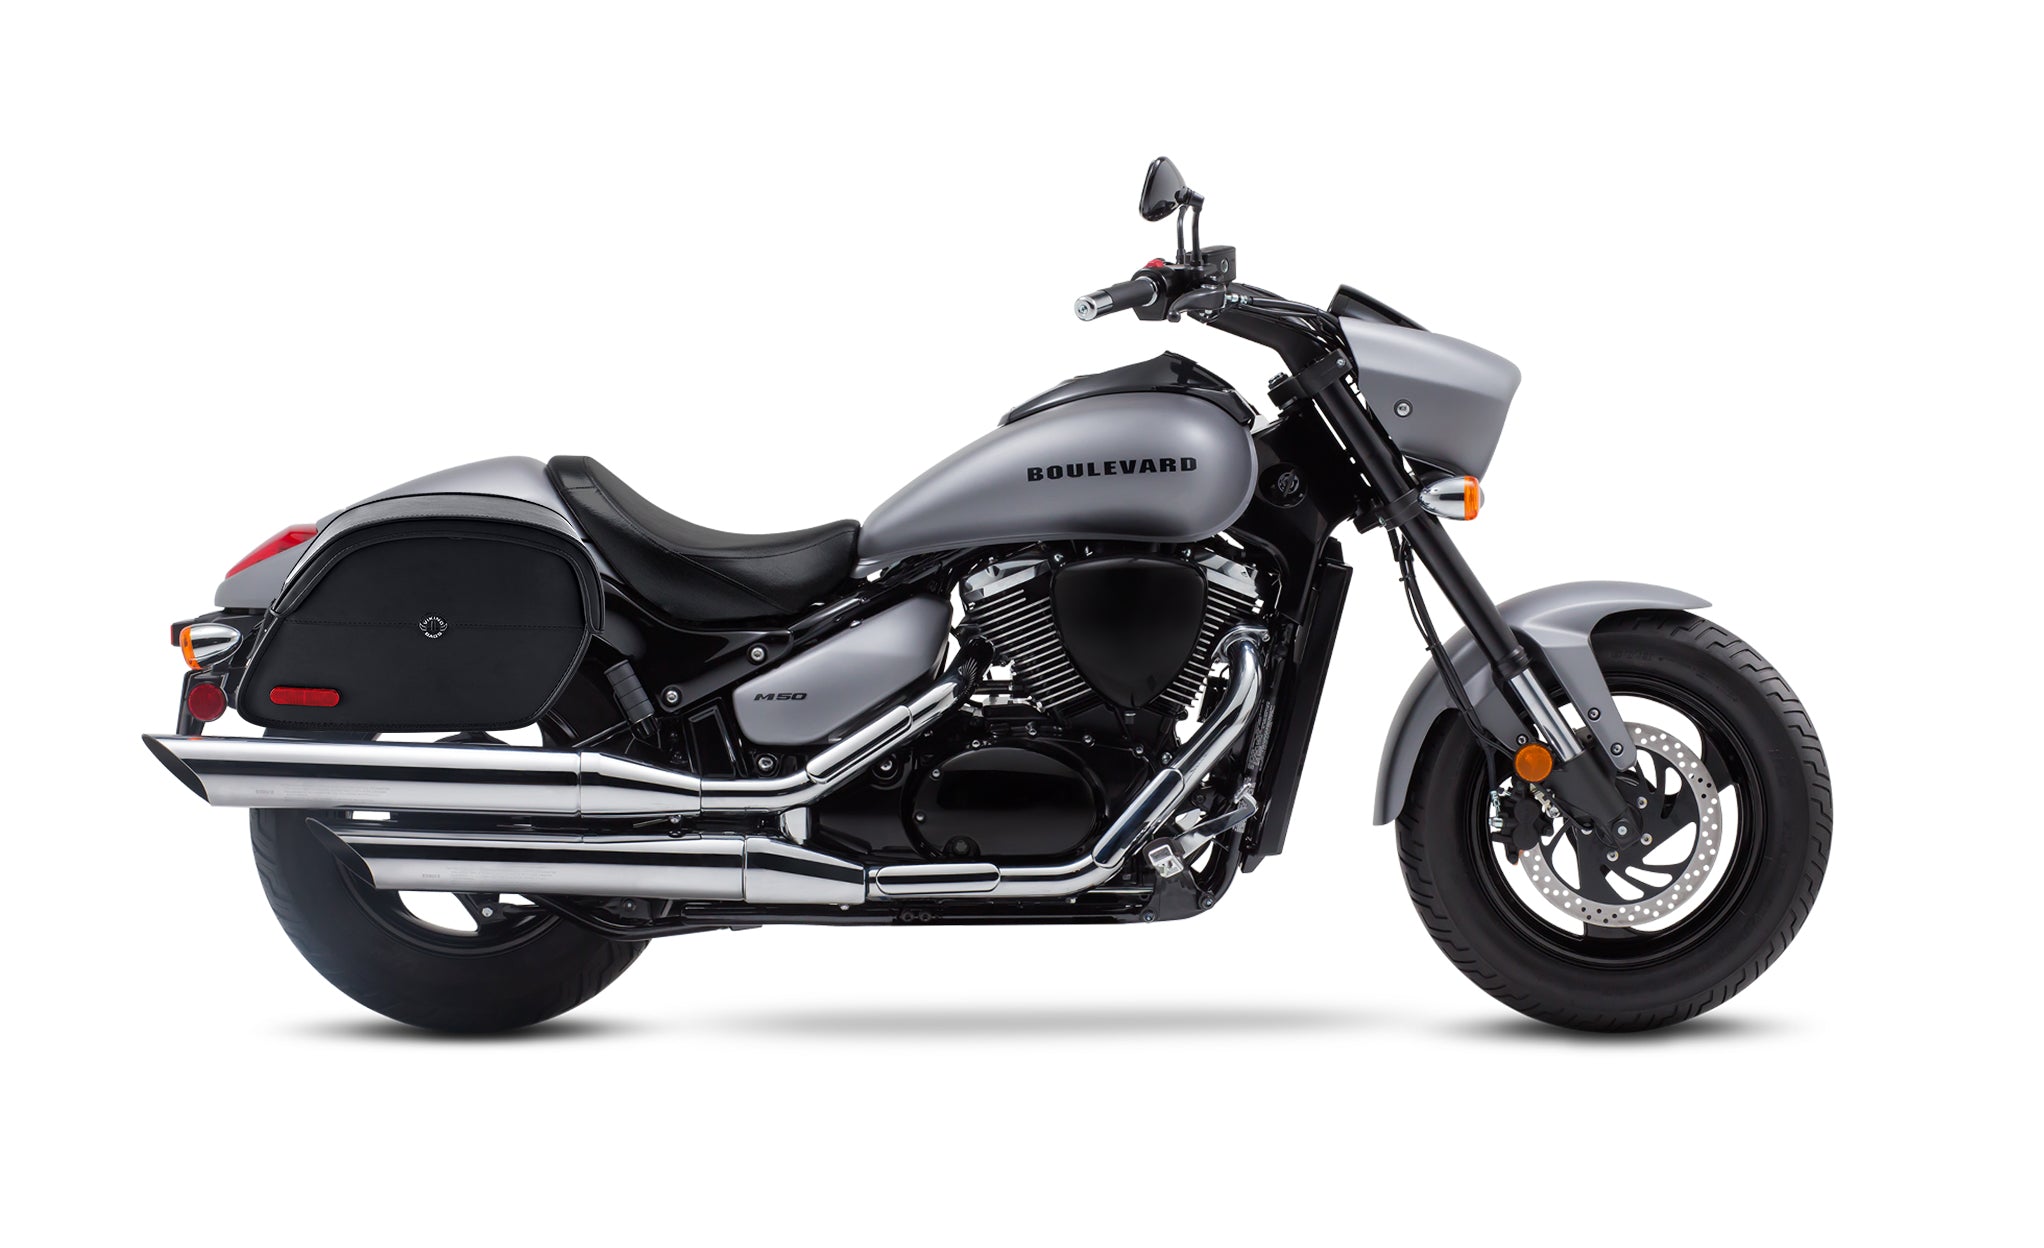 Viking California Large Suzuki Boulevard M50 Vz800 Leather Motorcycle Saddlebags on Bike Photo @expand